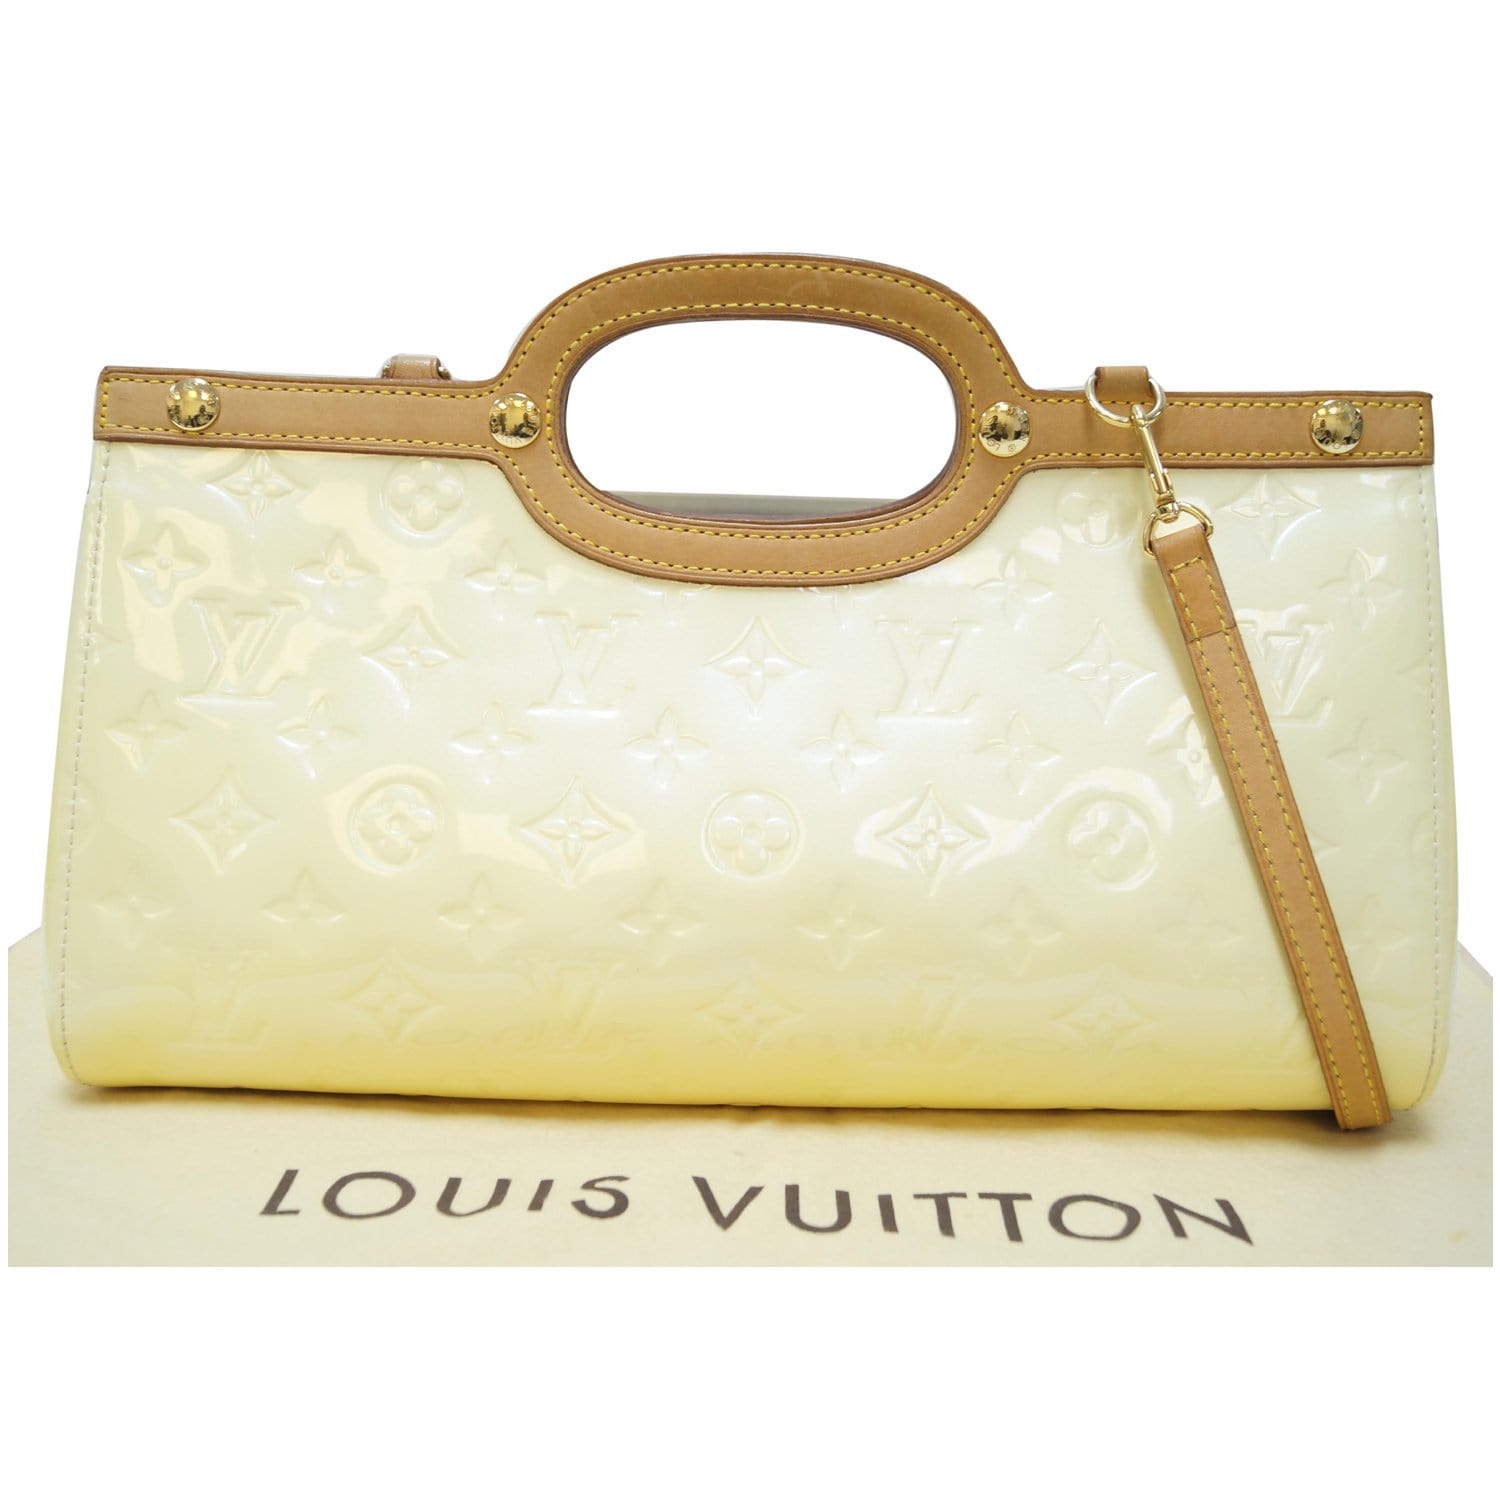 Louis Vuitton Louis Vuitton Roxbury Drive Noisette Vernis Leather